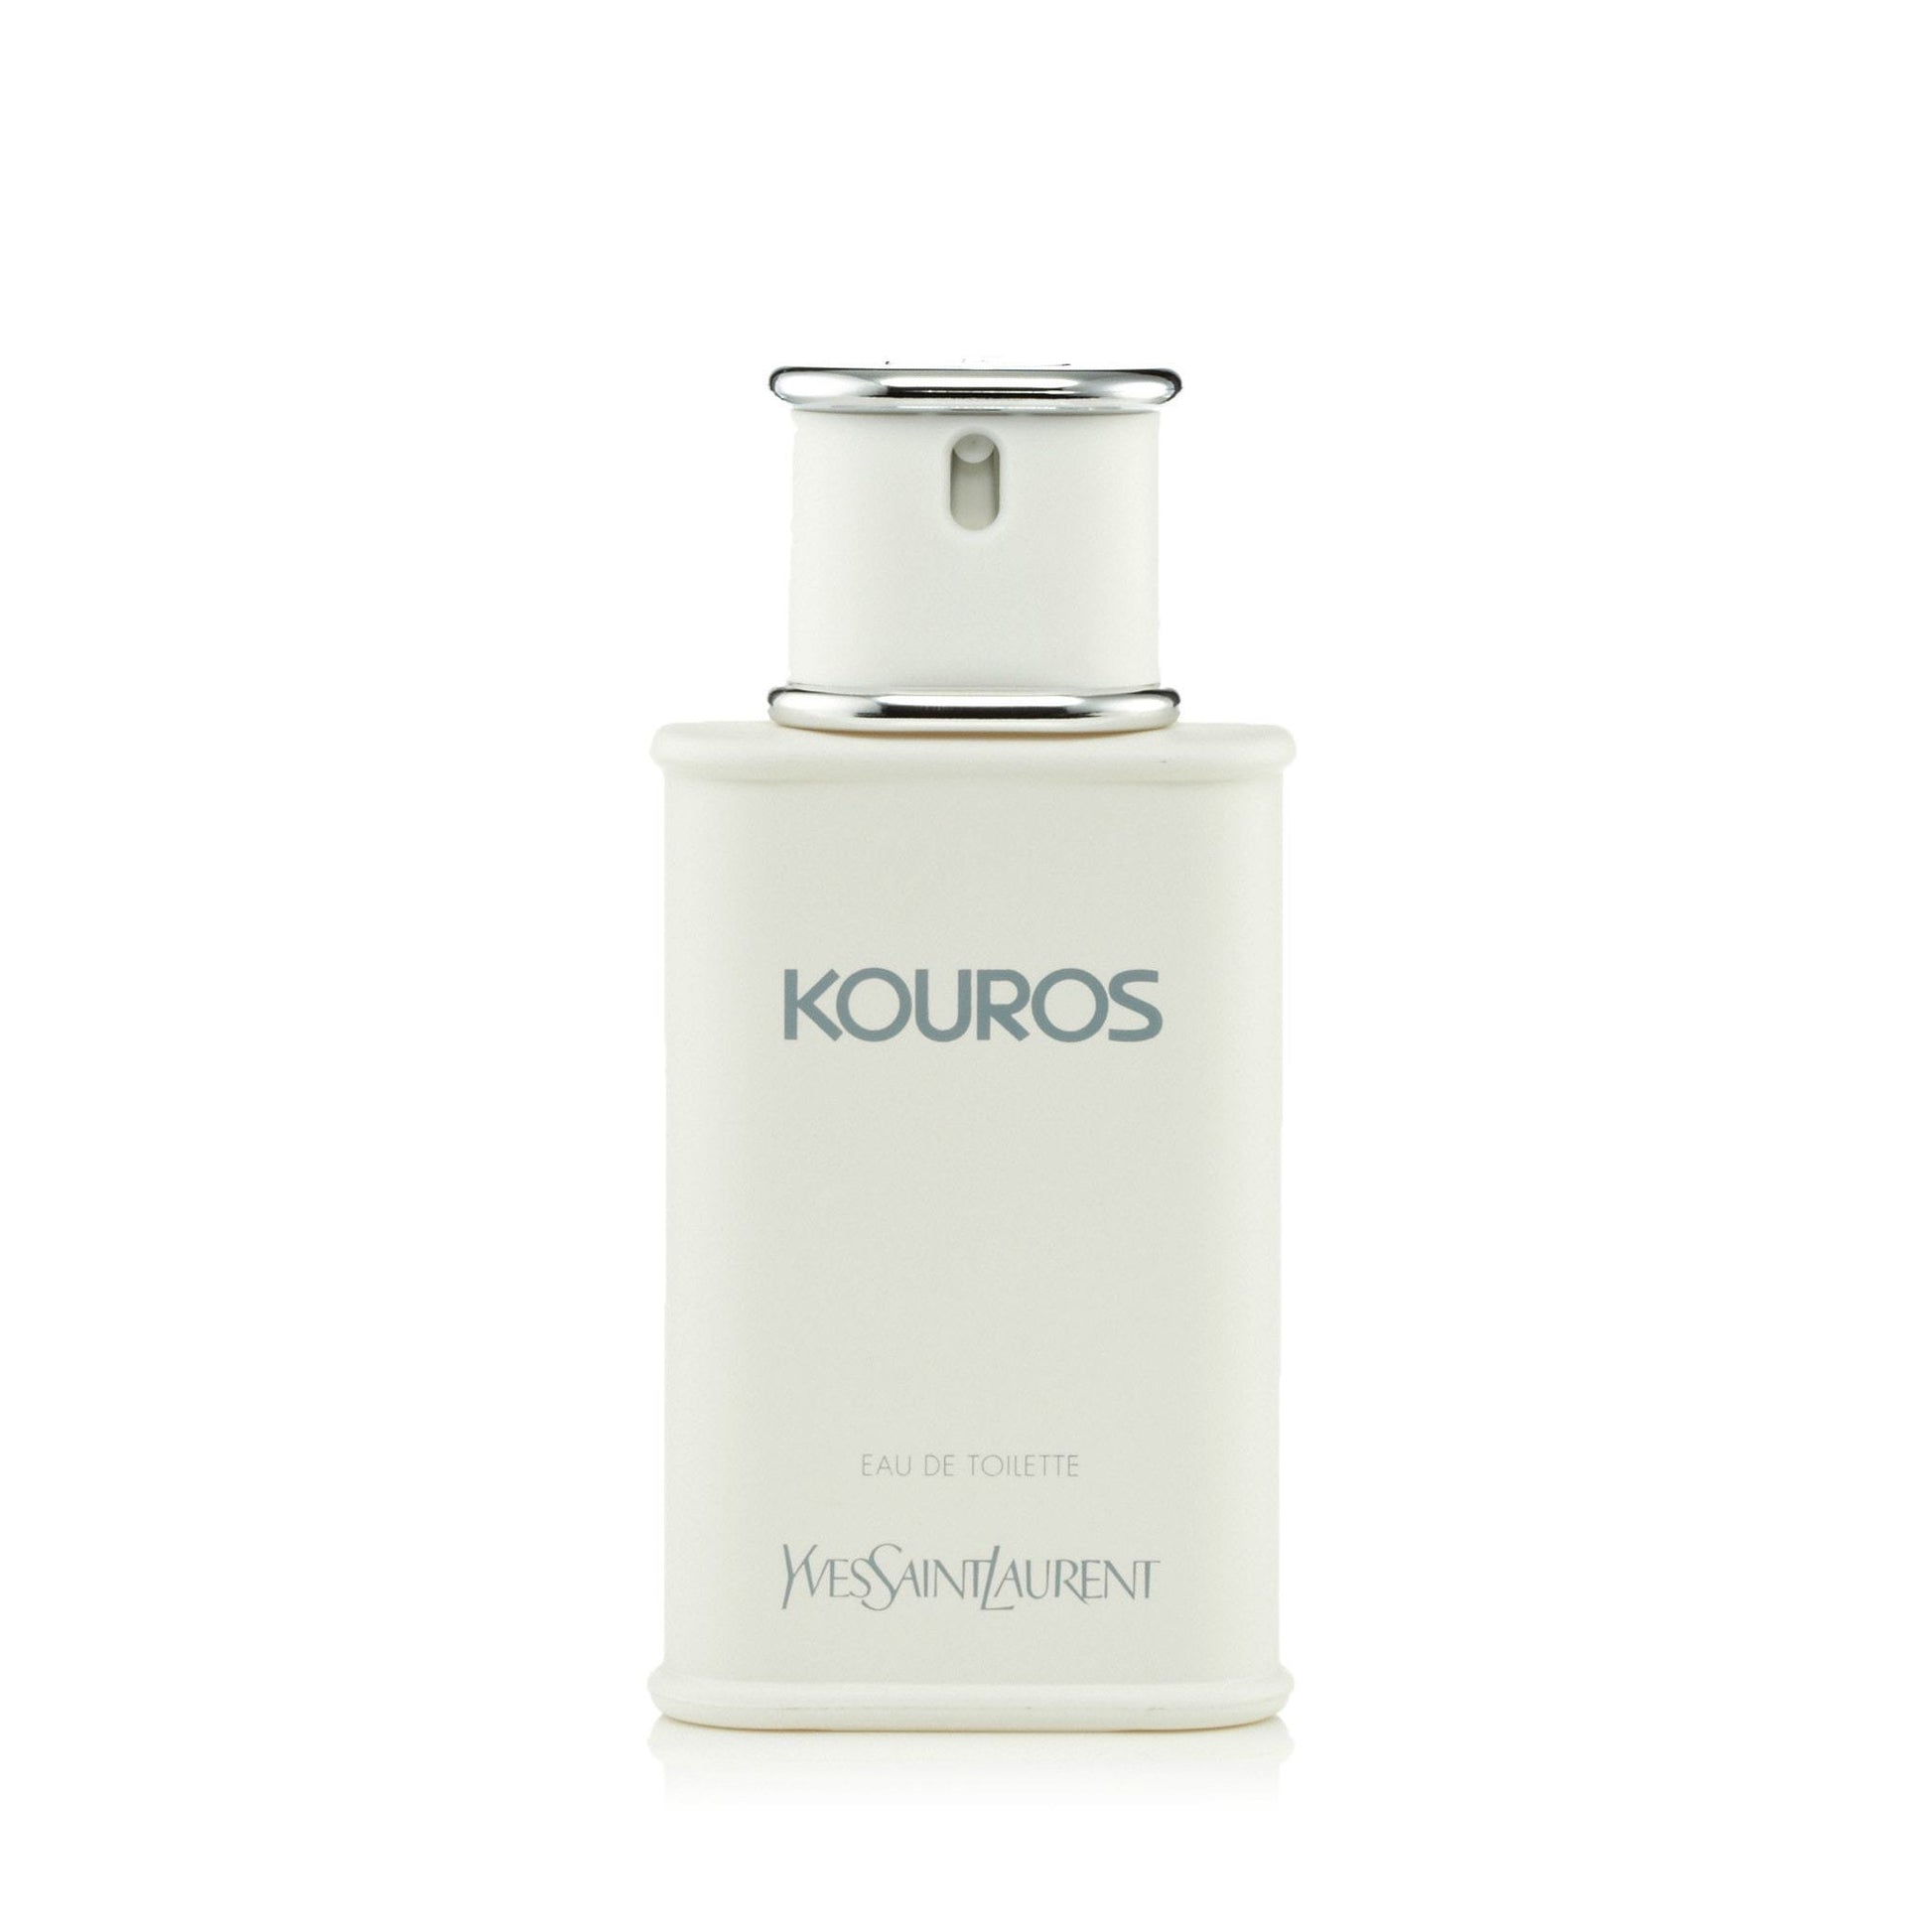 Kouros Eau de Toilette Spray for Men by Yves Saint Laurent, Product image 1